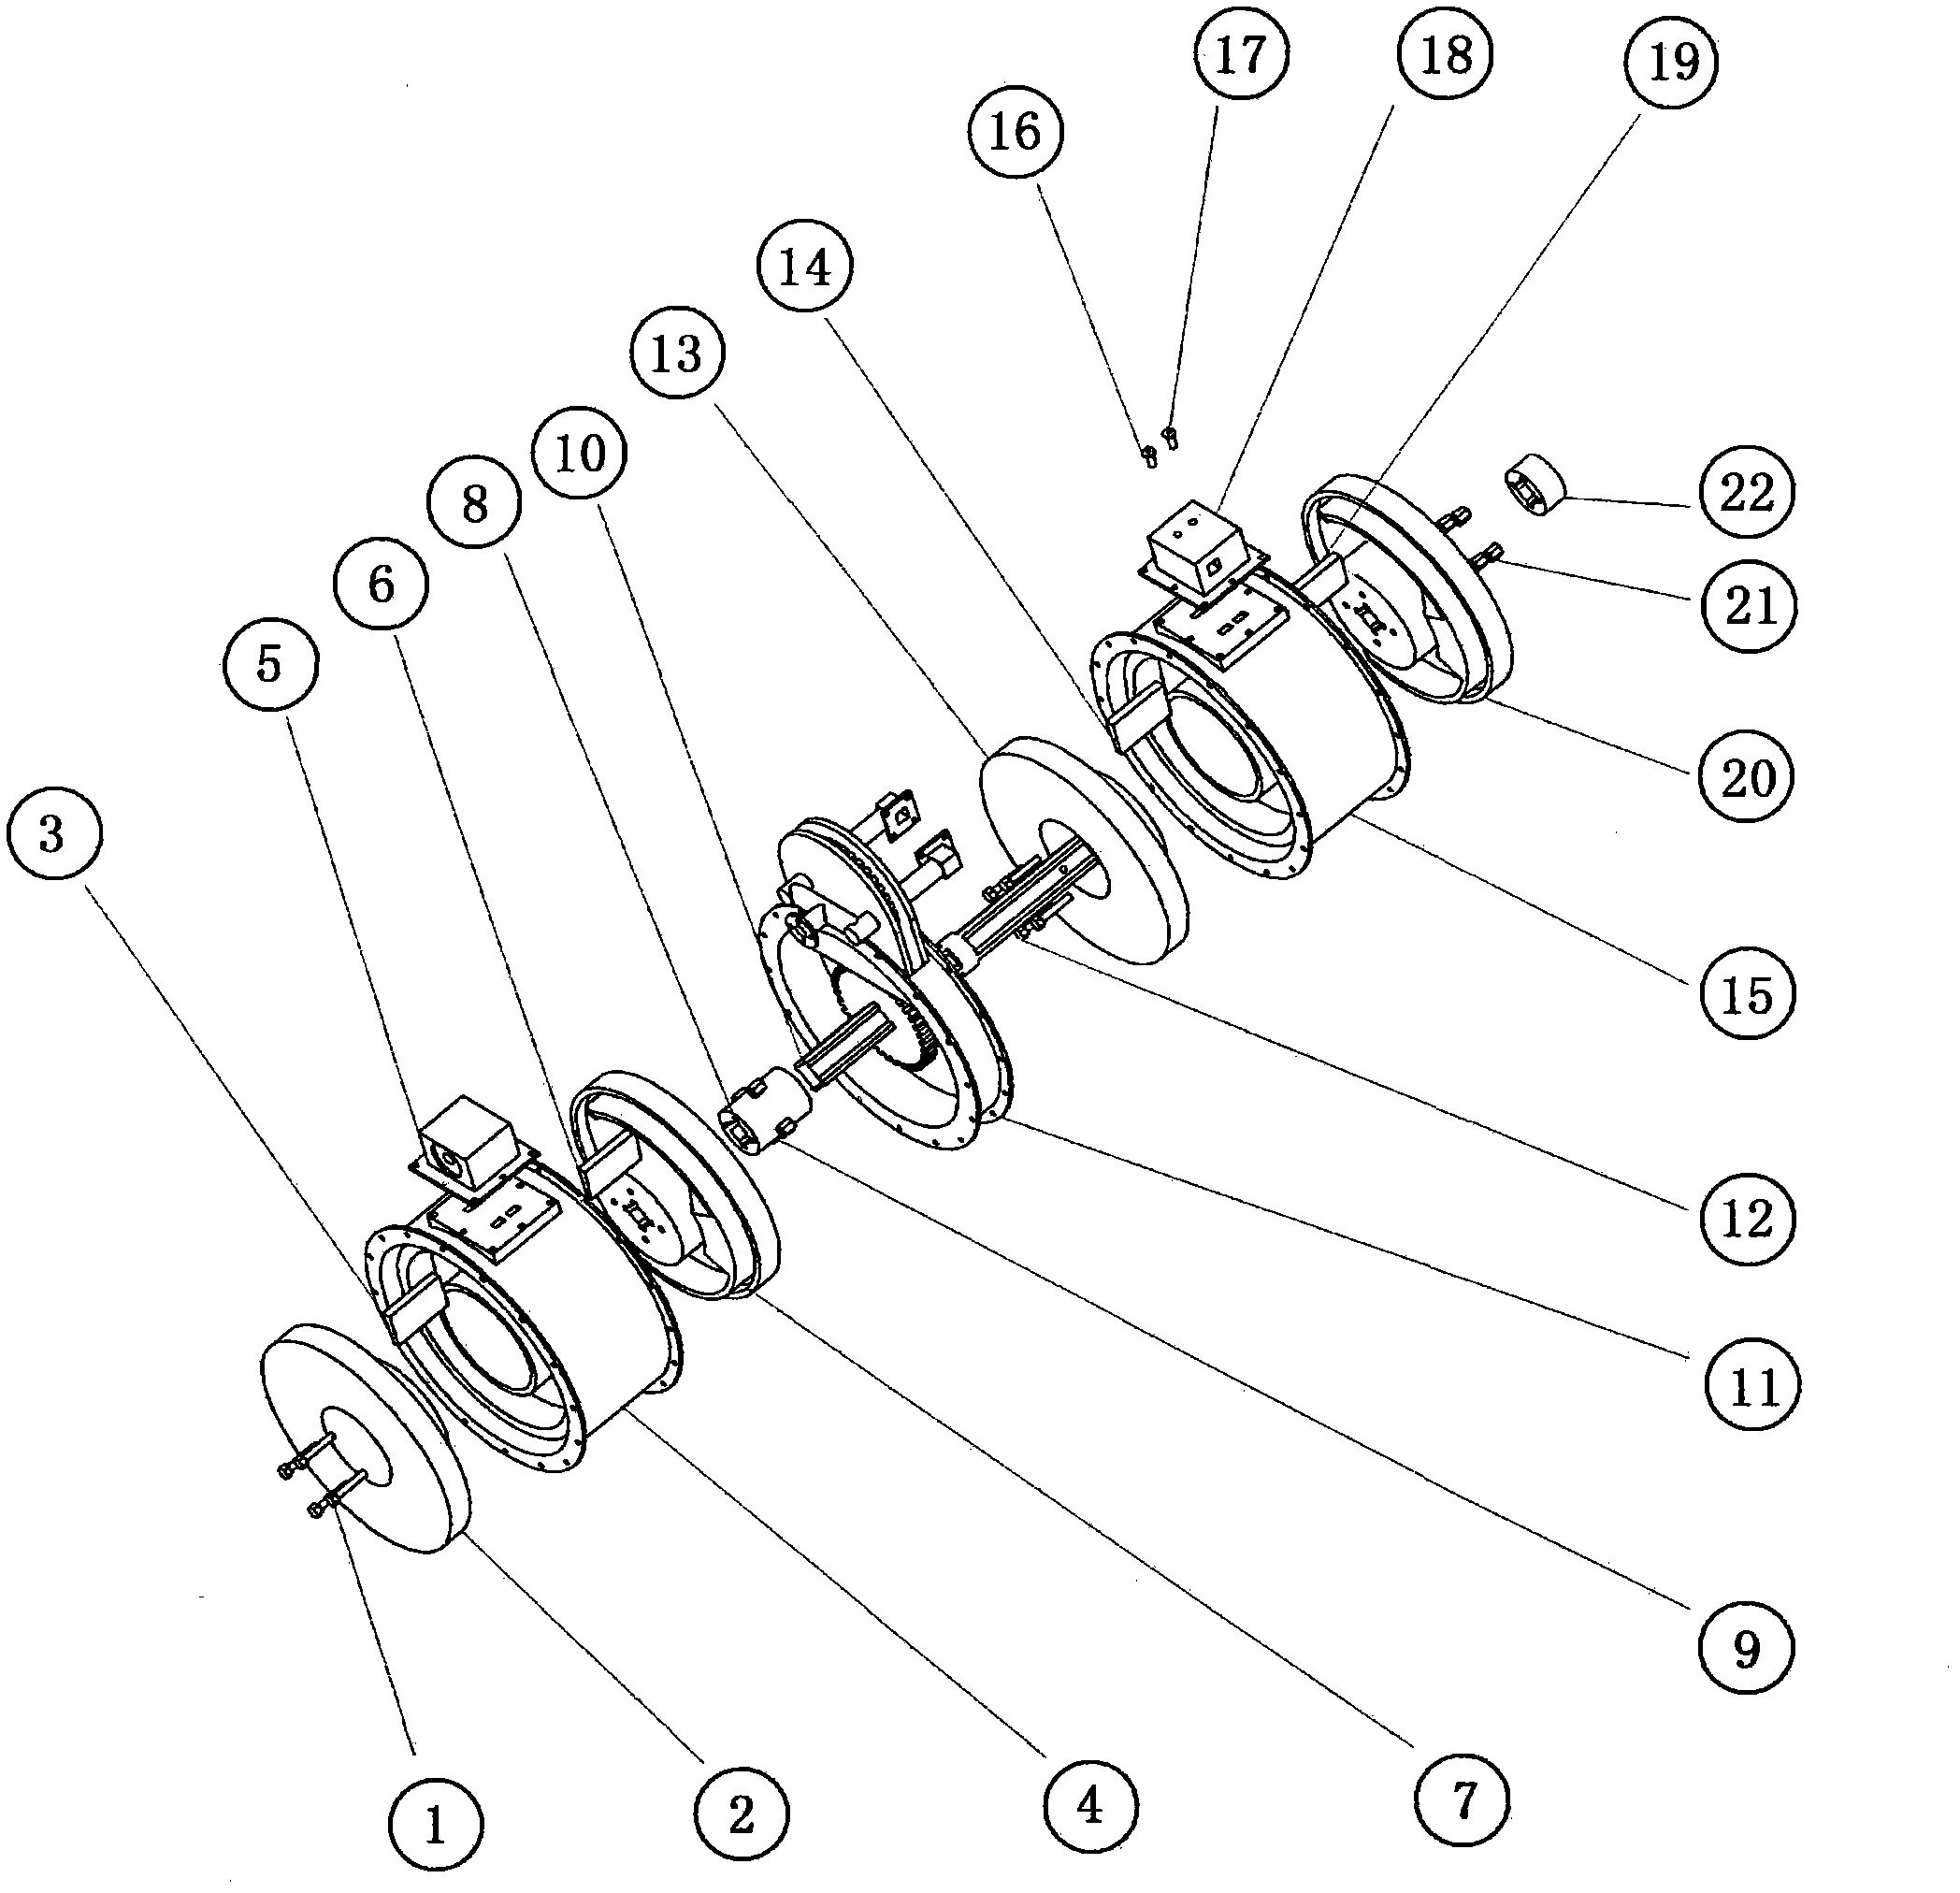 O-shaped rotary engine